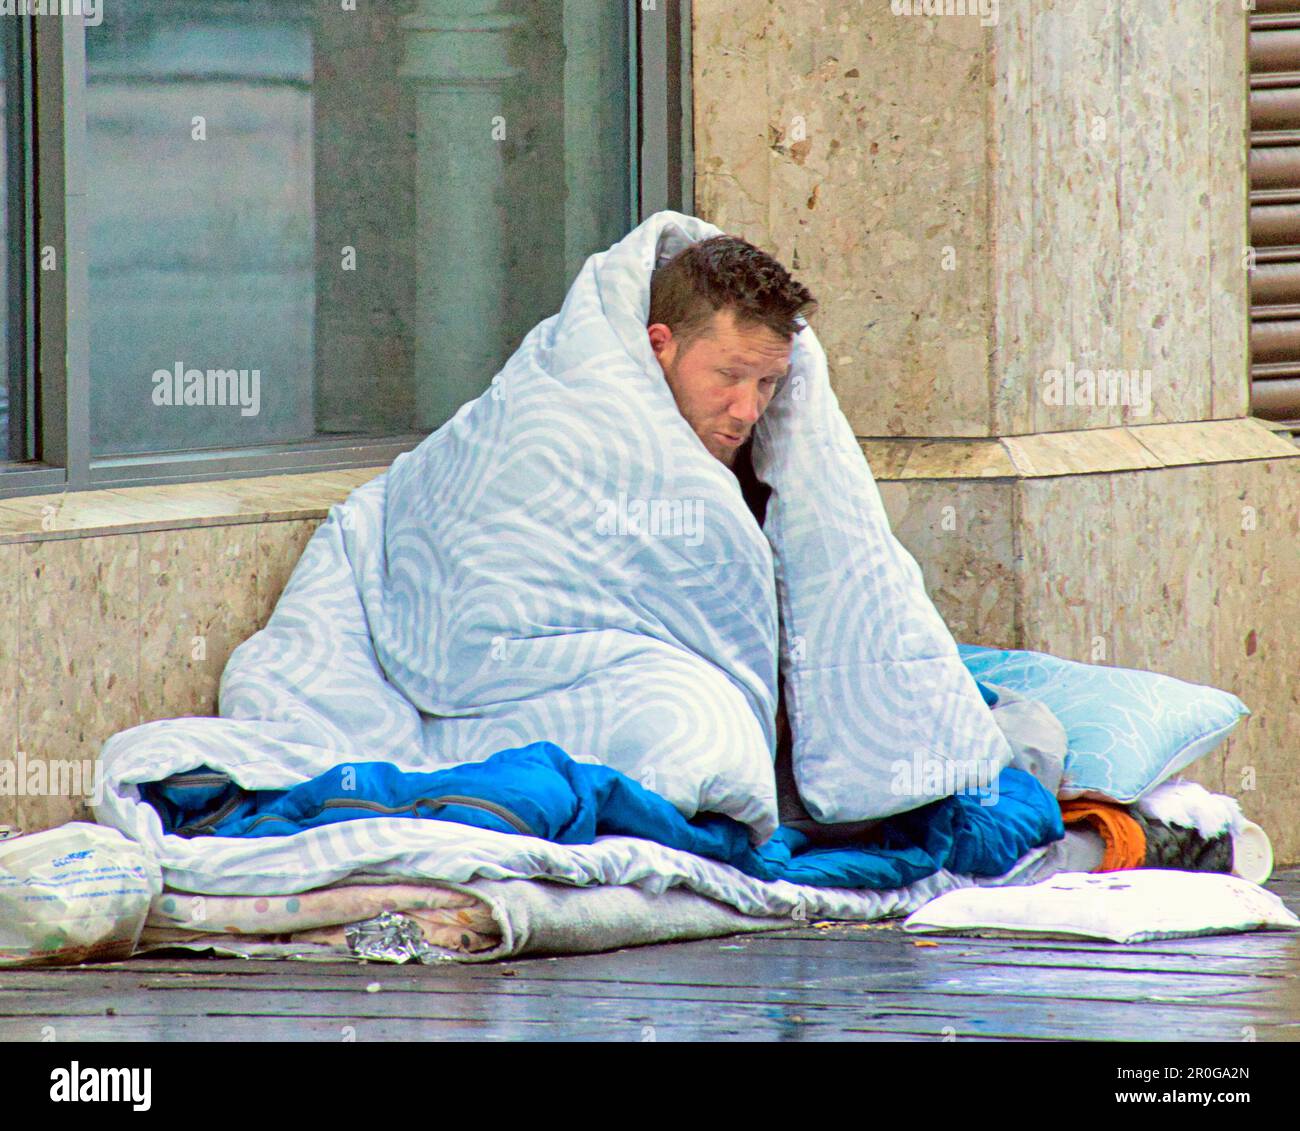 homeless man begging with duvet Stock Photo